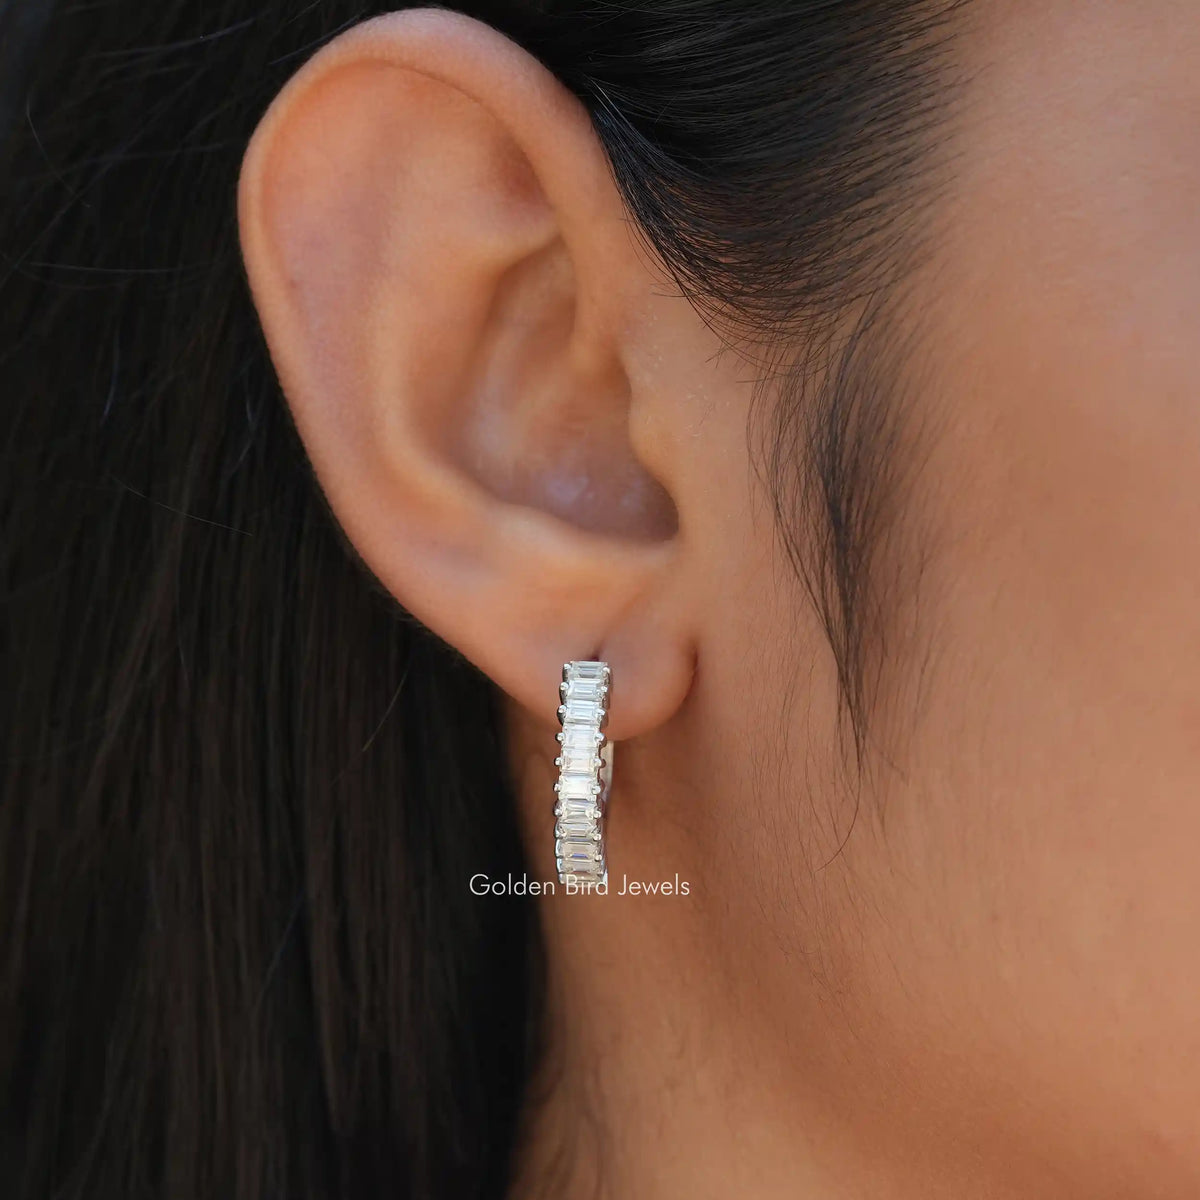 [In ear front view of baguette cut earrings in 14k white gold]-[Golden Bird Jewels]